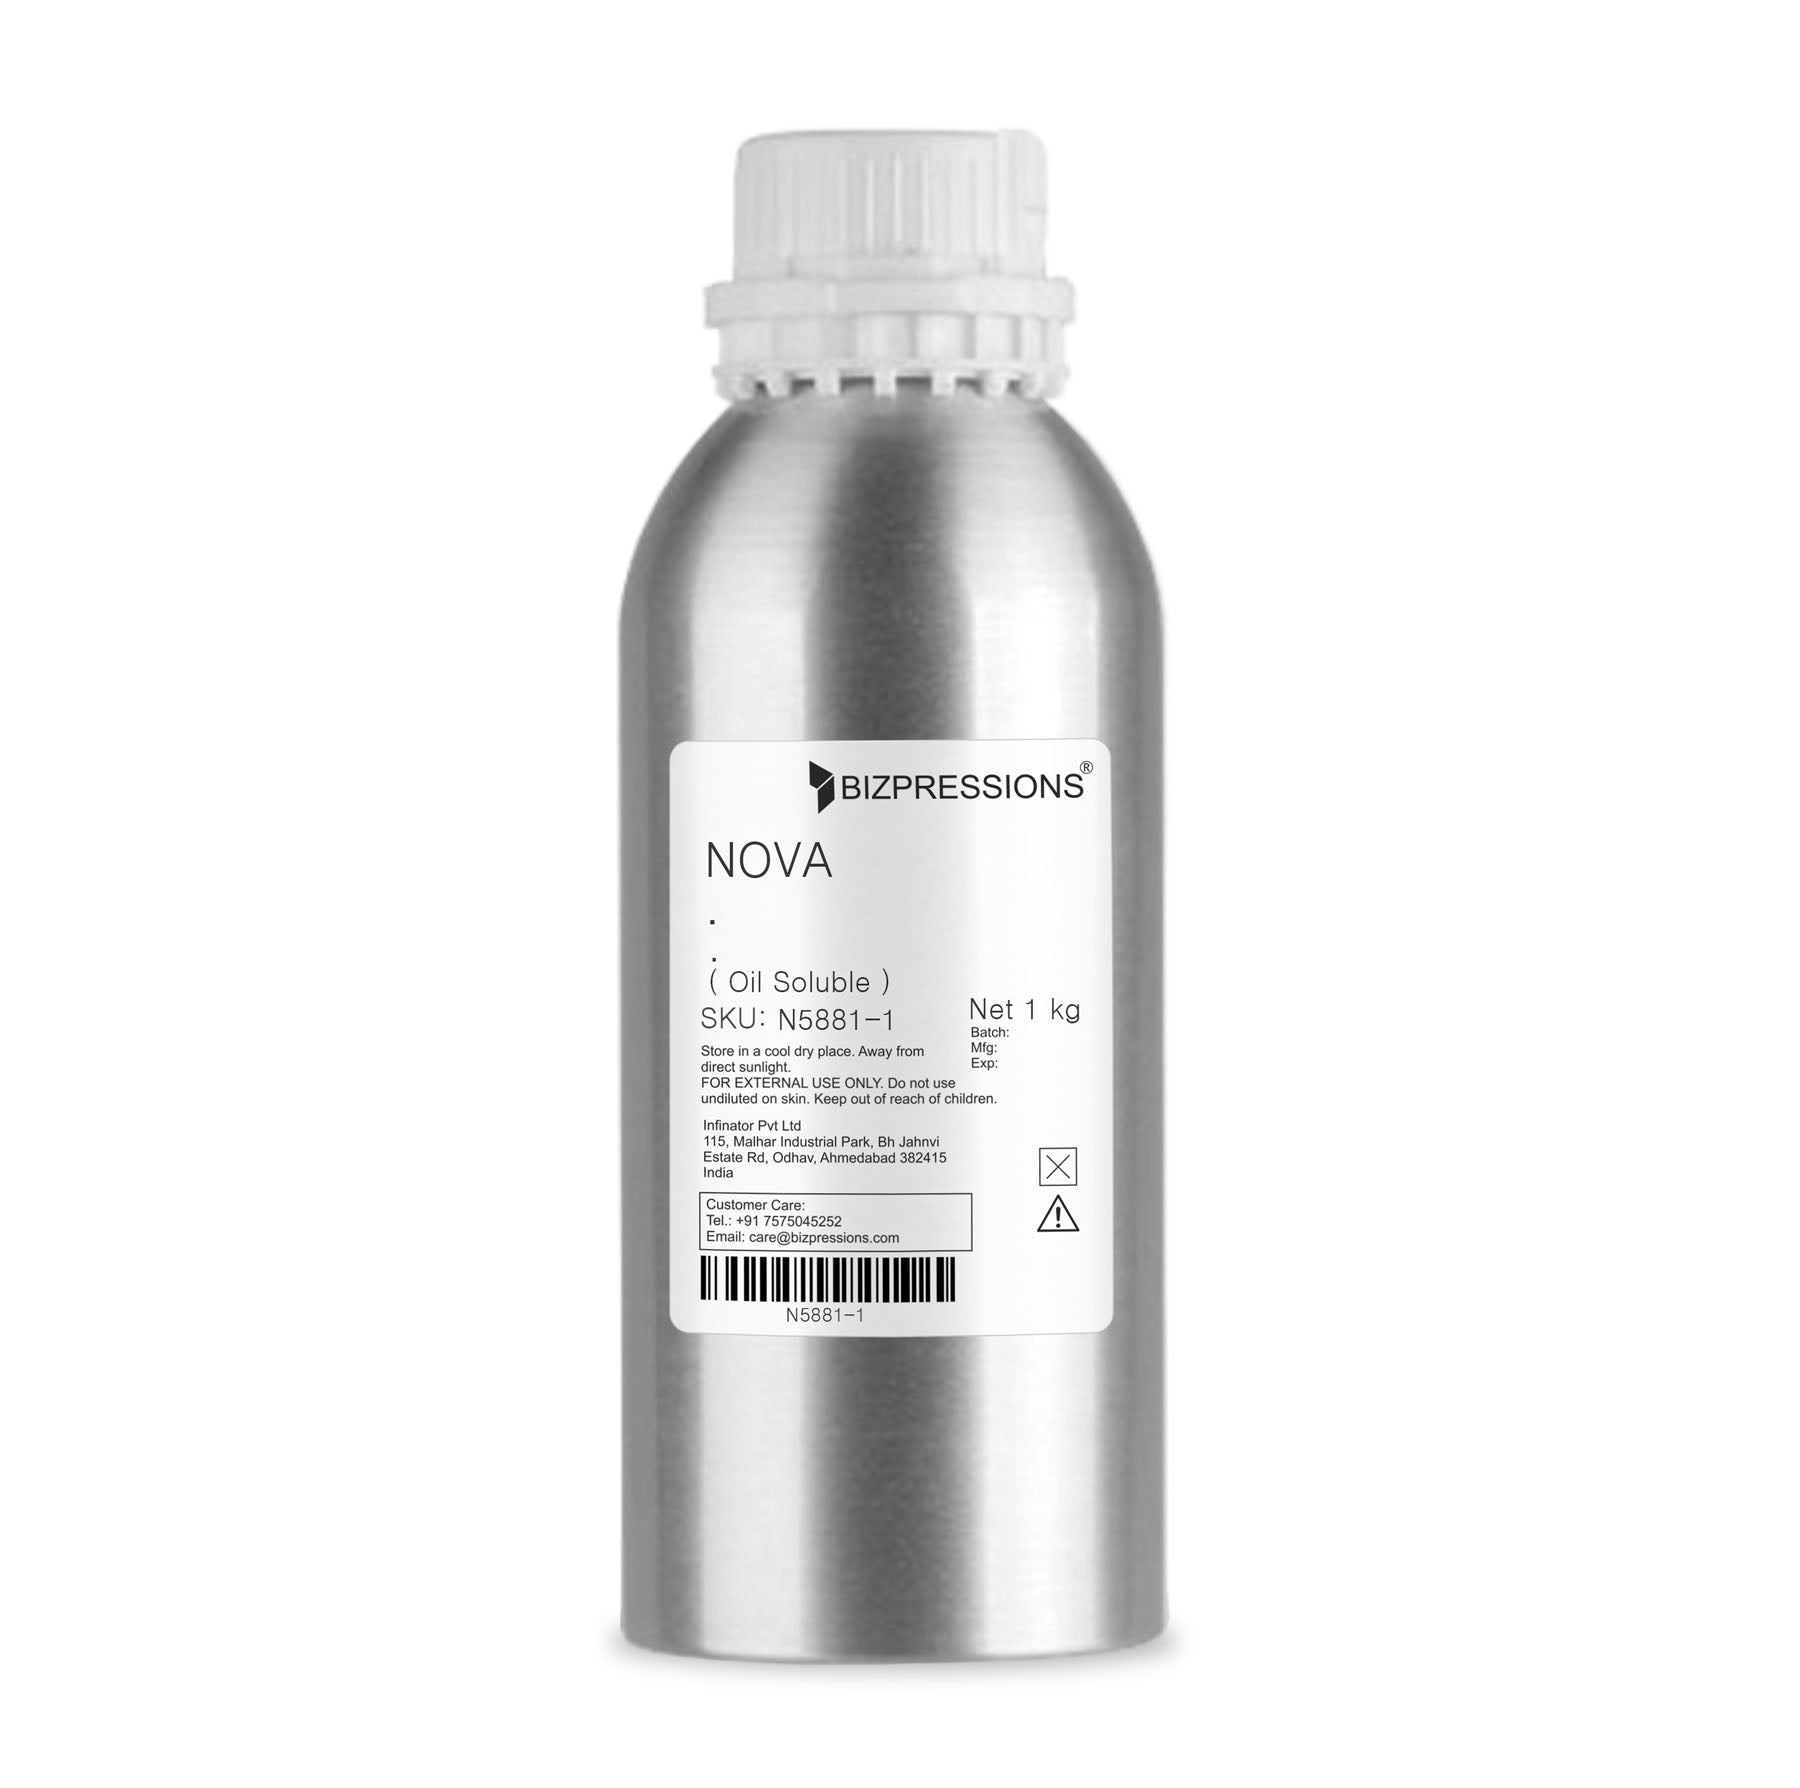 NOVA - Fragrance ( Oil Soluble ) - 1 kg